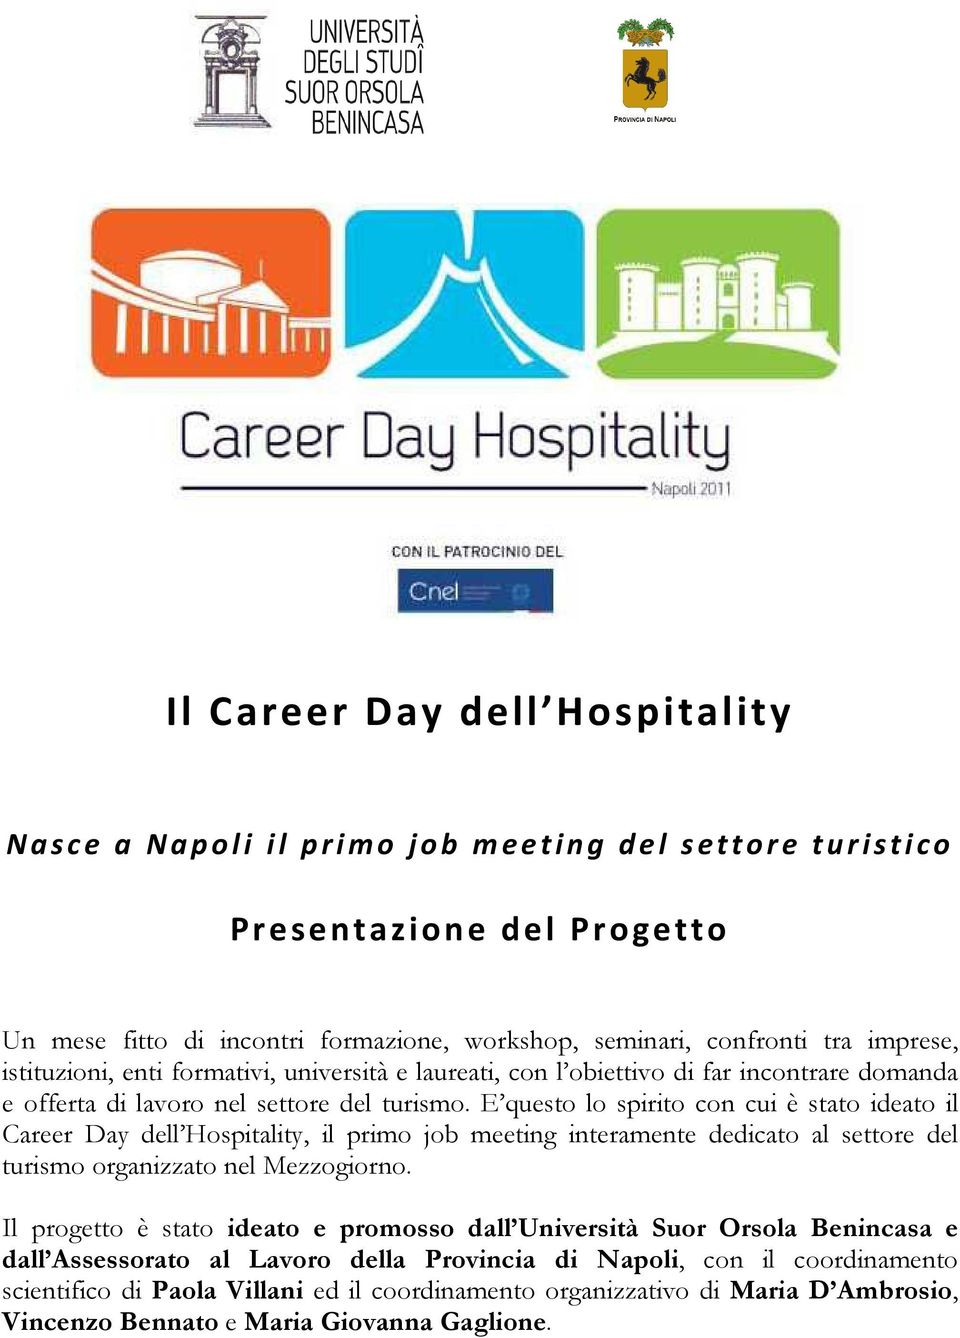 E questo lo spirito con cui è stato ideato il Career Day dell Hospitality, il primo job meeting interamente dedicato al settore del turismo organizzato nel Mezzogiorno.